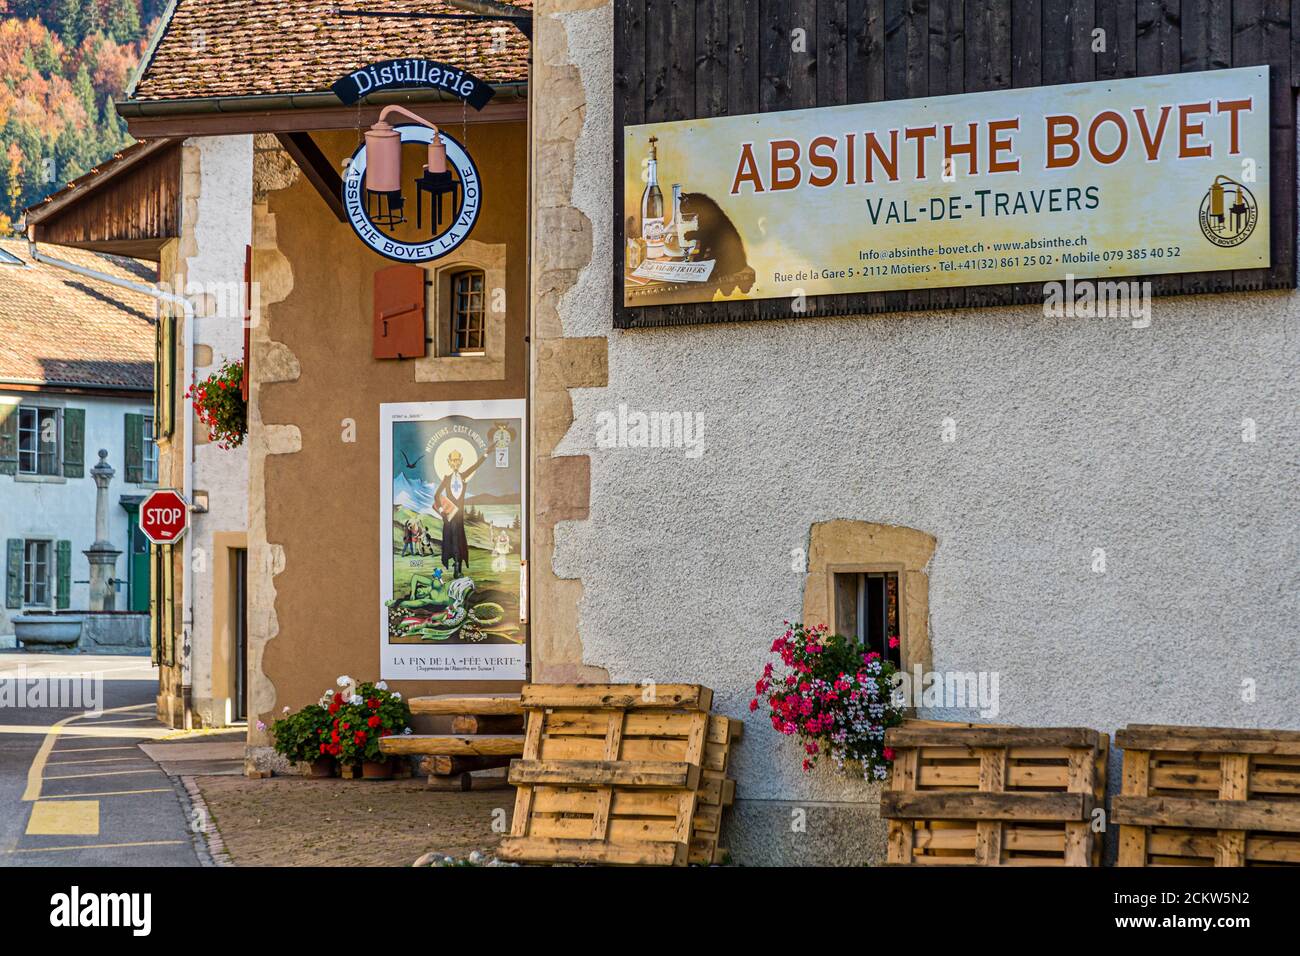 Absinthe en France et en Suisse. Motiers, dans le canton suisse de  Neuchâtel, abrite le musée Absinthe, très divertissant, et sur certains  murs de maisons de la ville, des affiches historiques rappellent